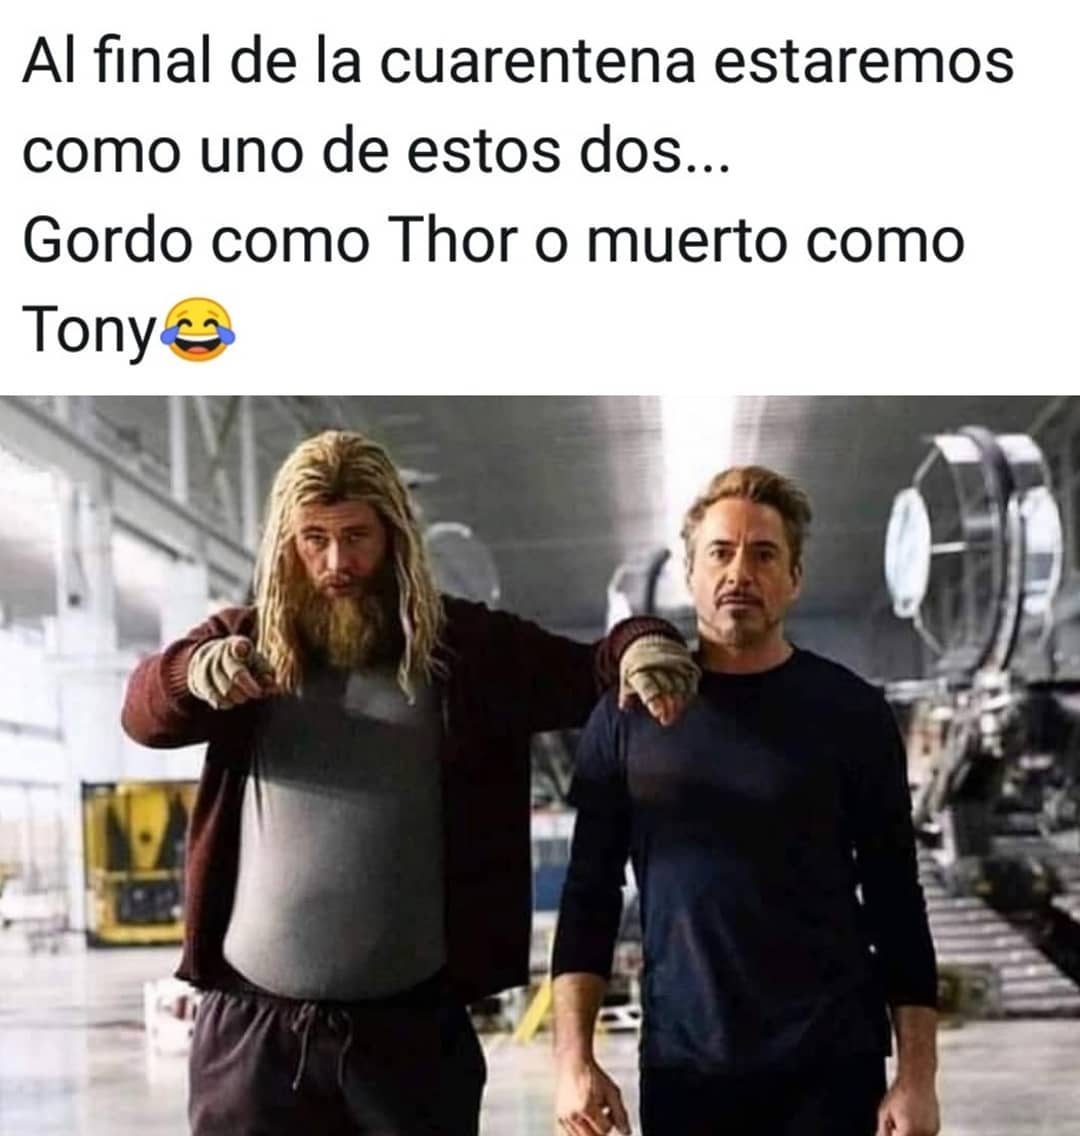 Al final de la cuarentena estaremos como uno de estos dos... Gordo como Thor o muerto como Tony.